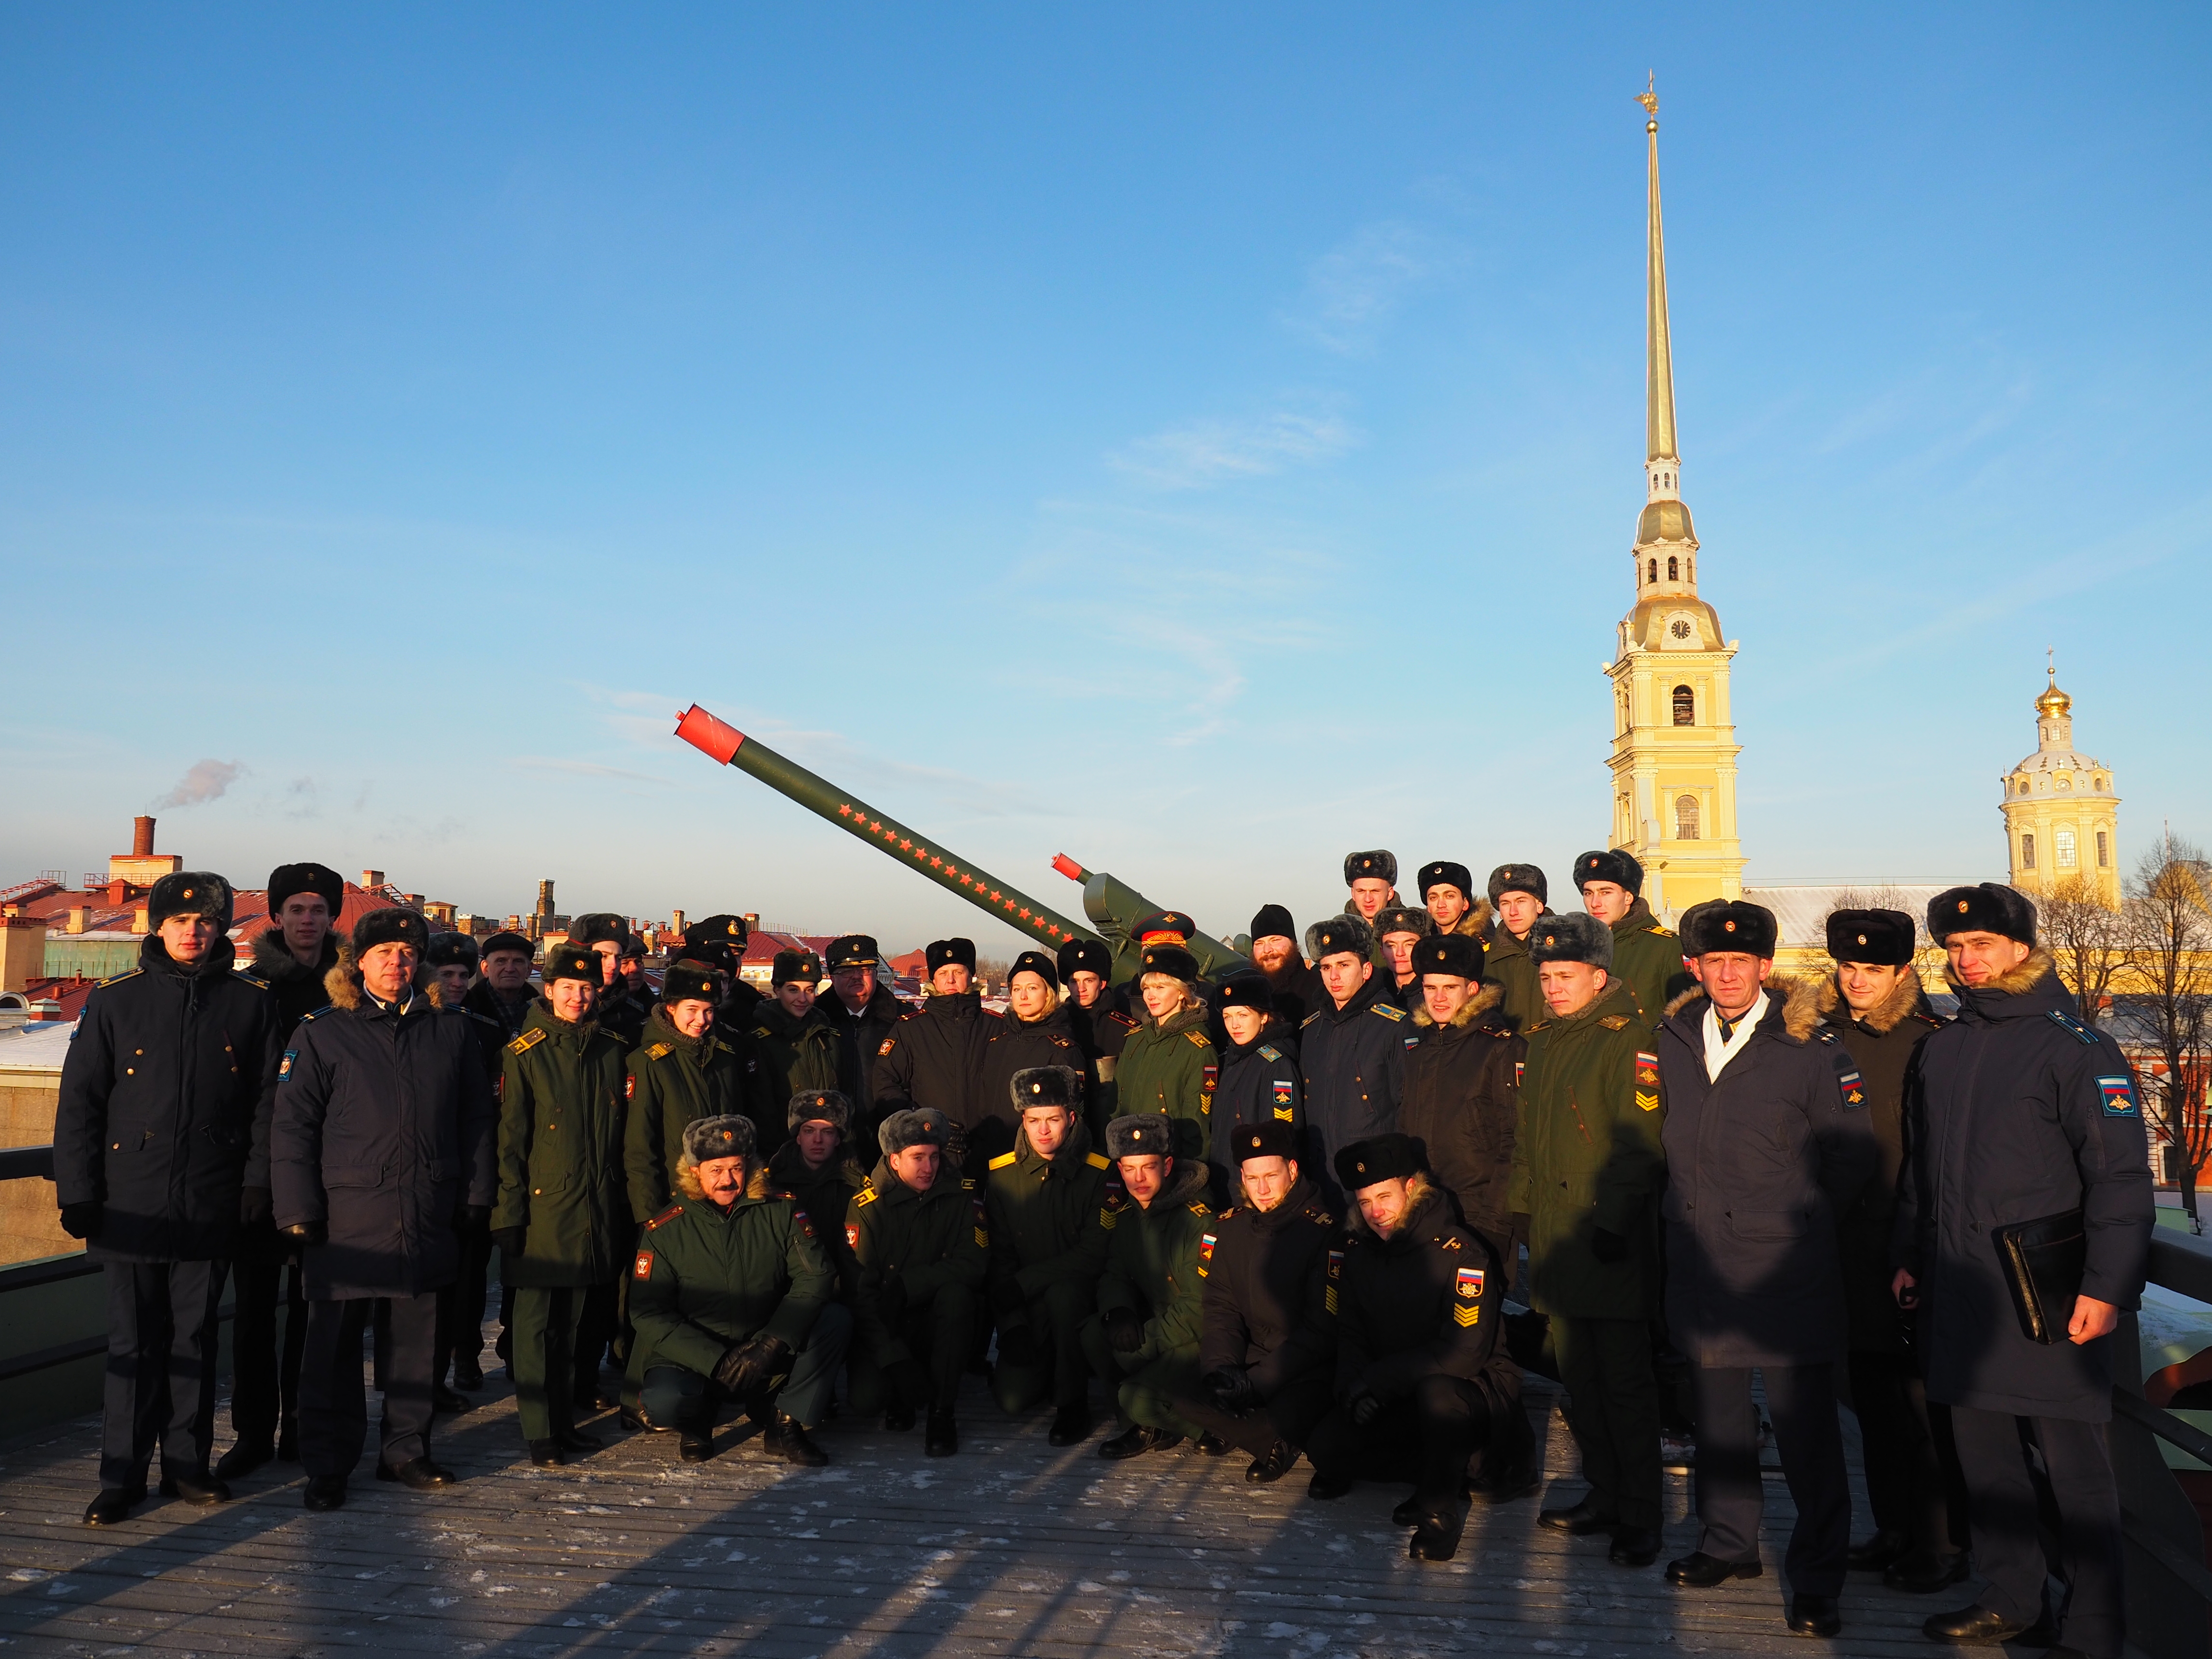 Выстрел пушки Петропавловской крепости дал старт торжествам в честь 220-летней годовщины Военно-медицинской академии